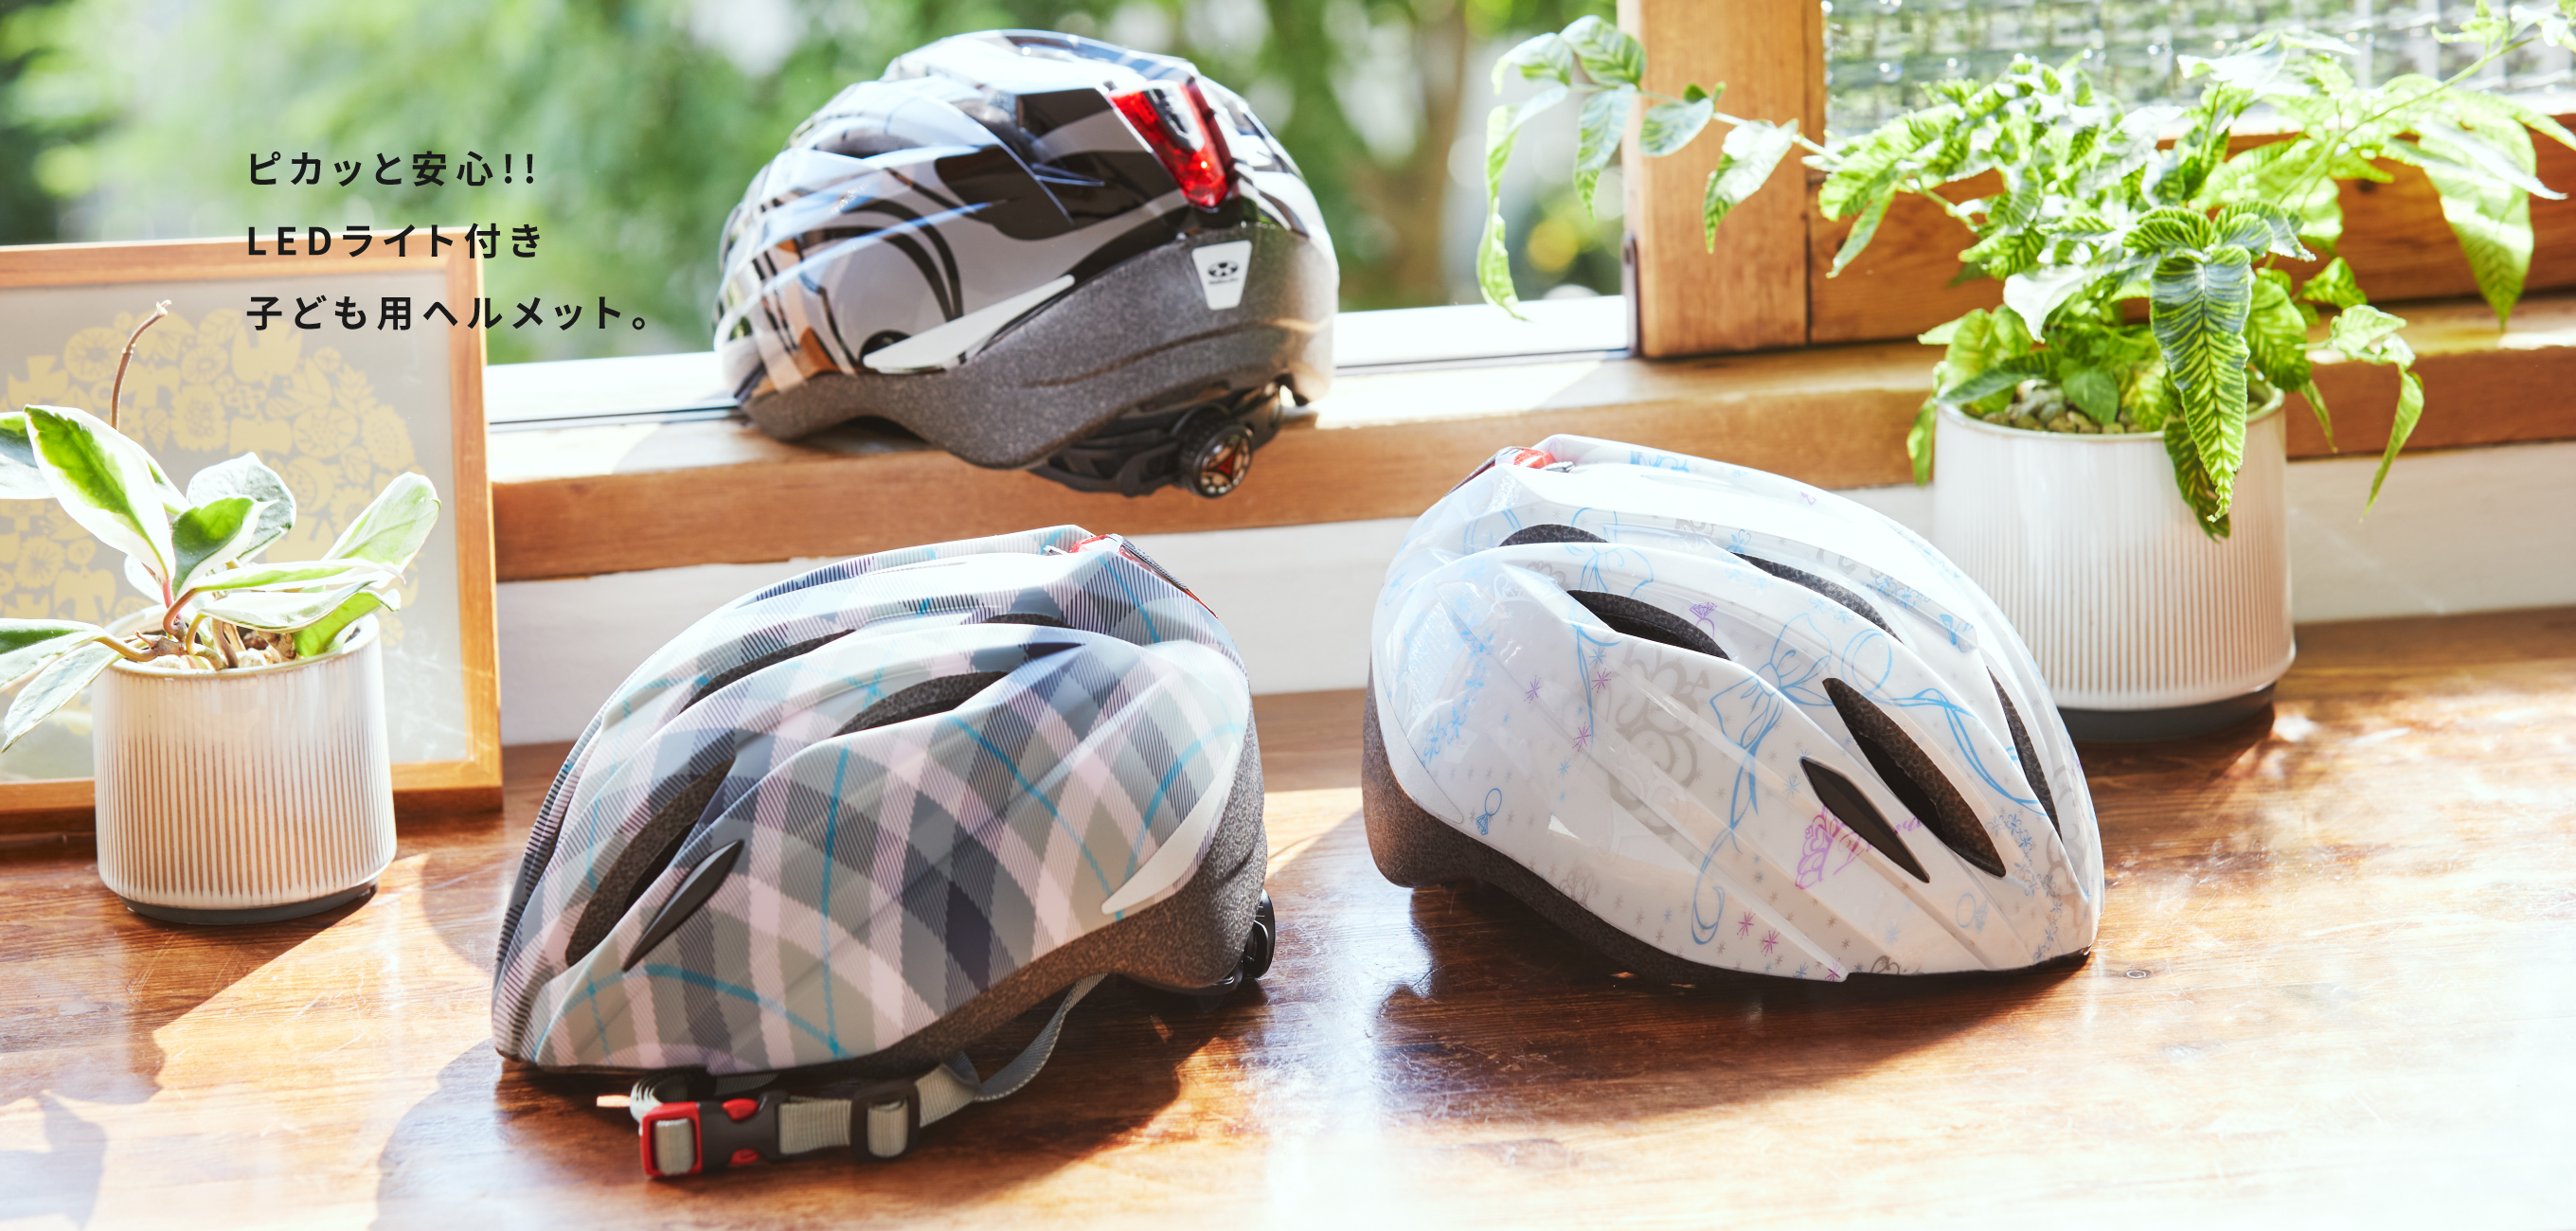 子供用ヘルメット BRIGHT-J1 ブライト・ジェイワン ソフトシェル インモールド ピカッと安心!! LEDライト付き子ども用ヘルメット。